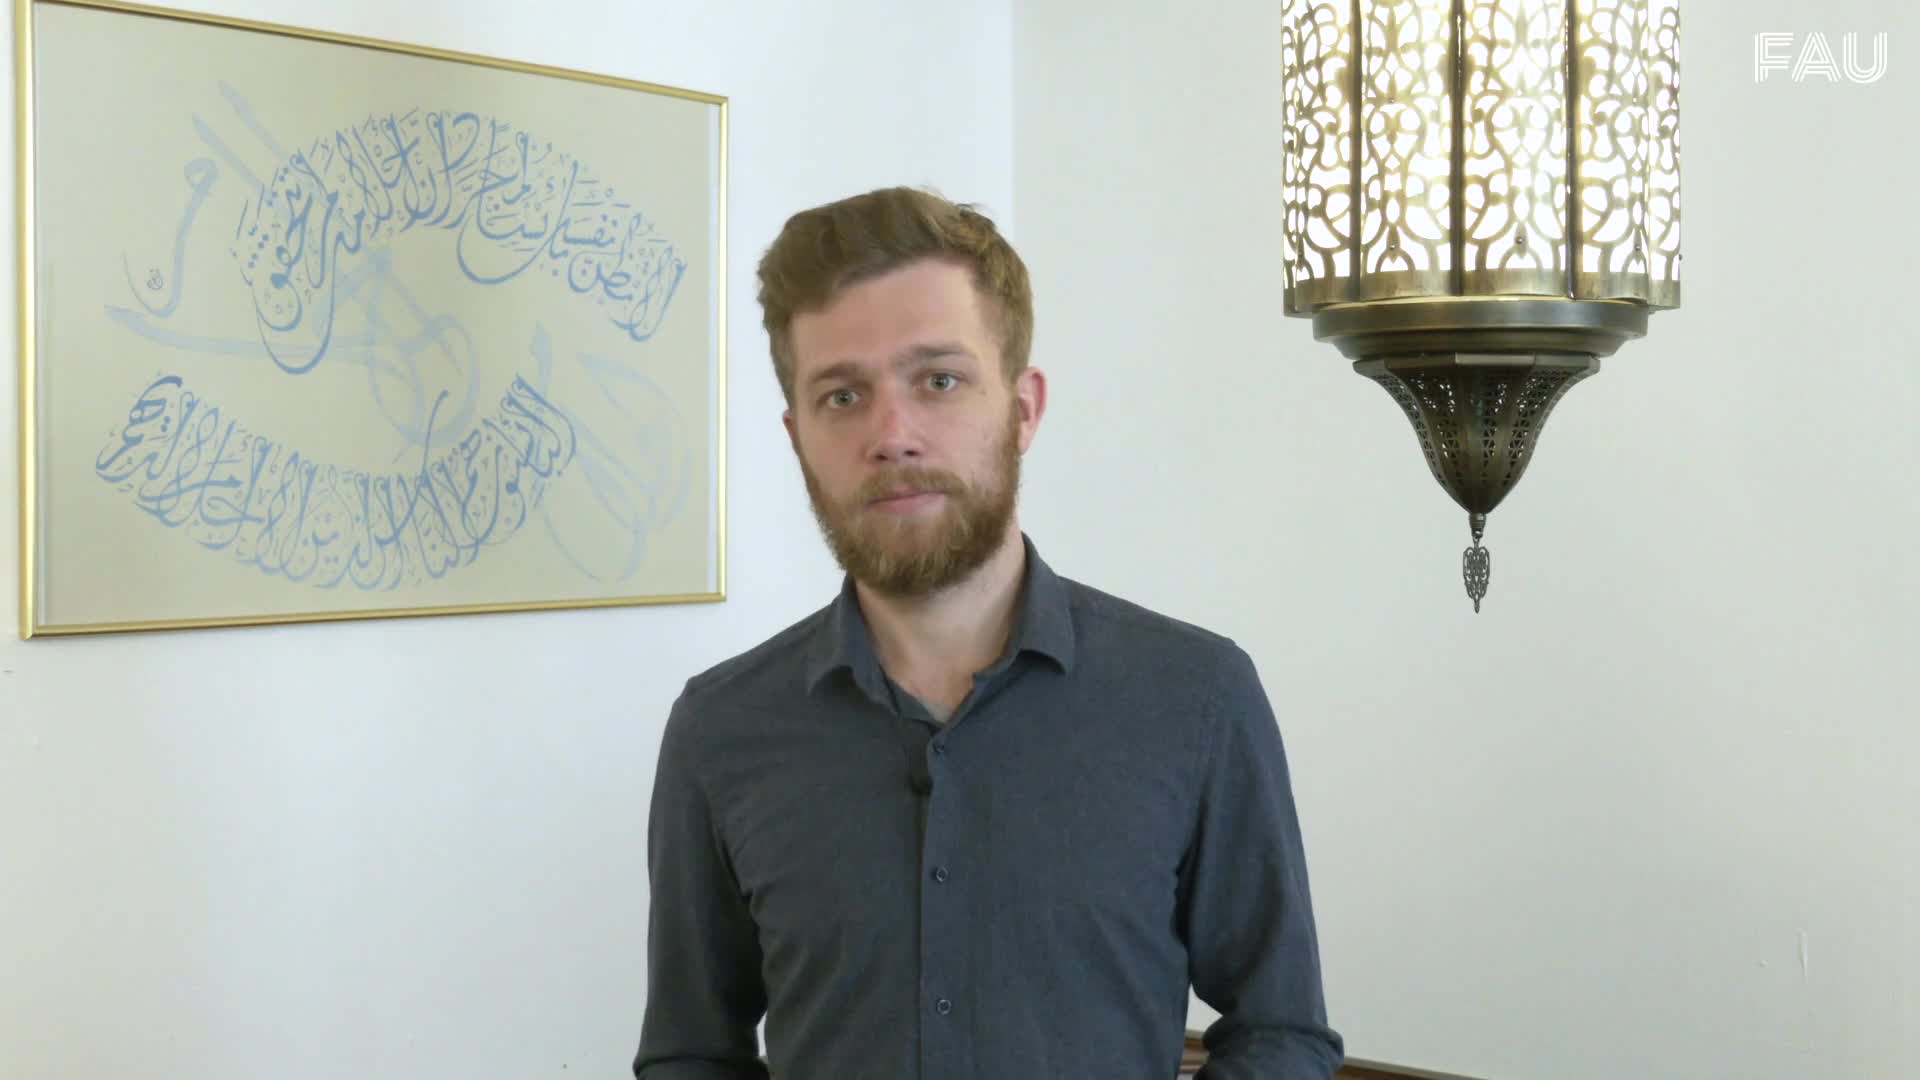 2 Minuten Wissen Phil - Fremde arabische Sprache? preview image